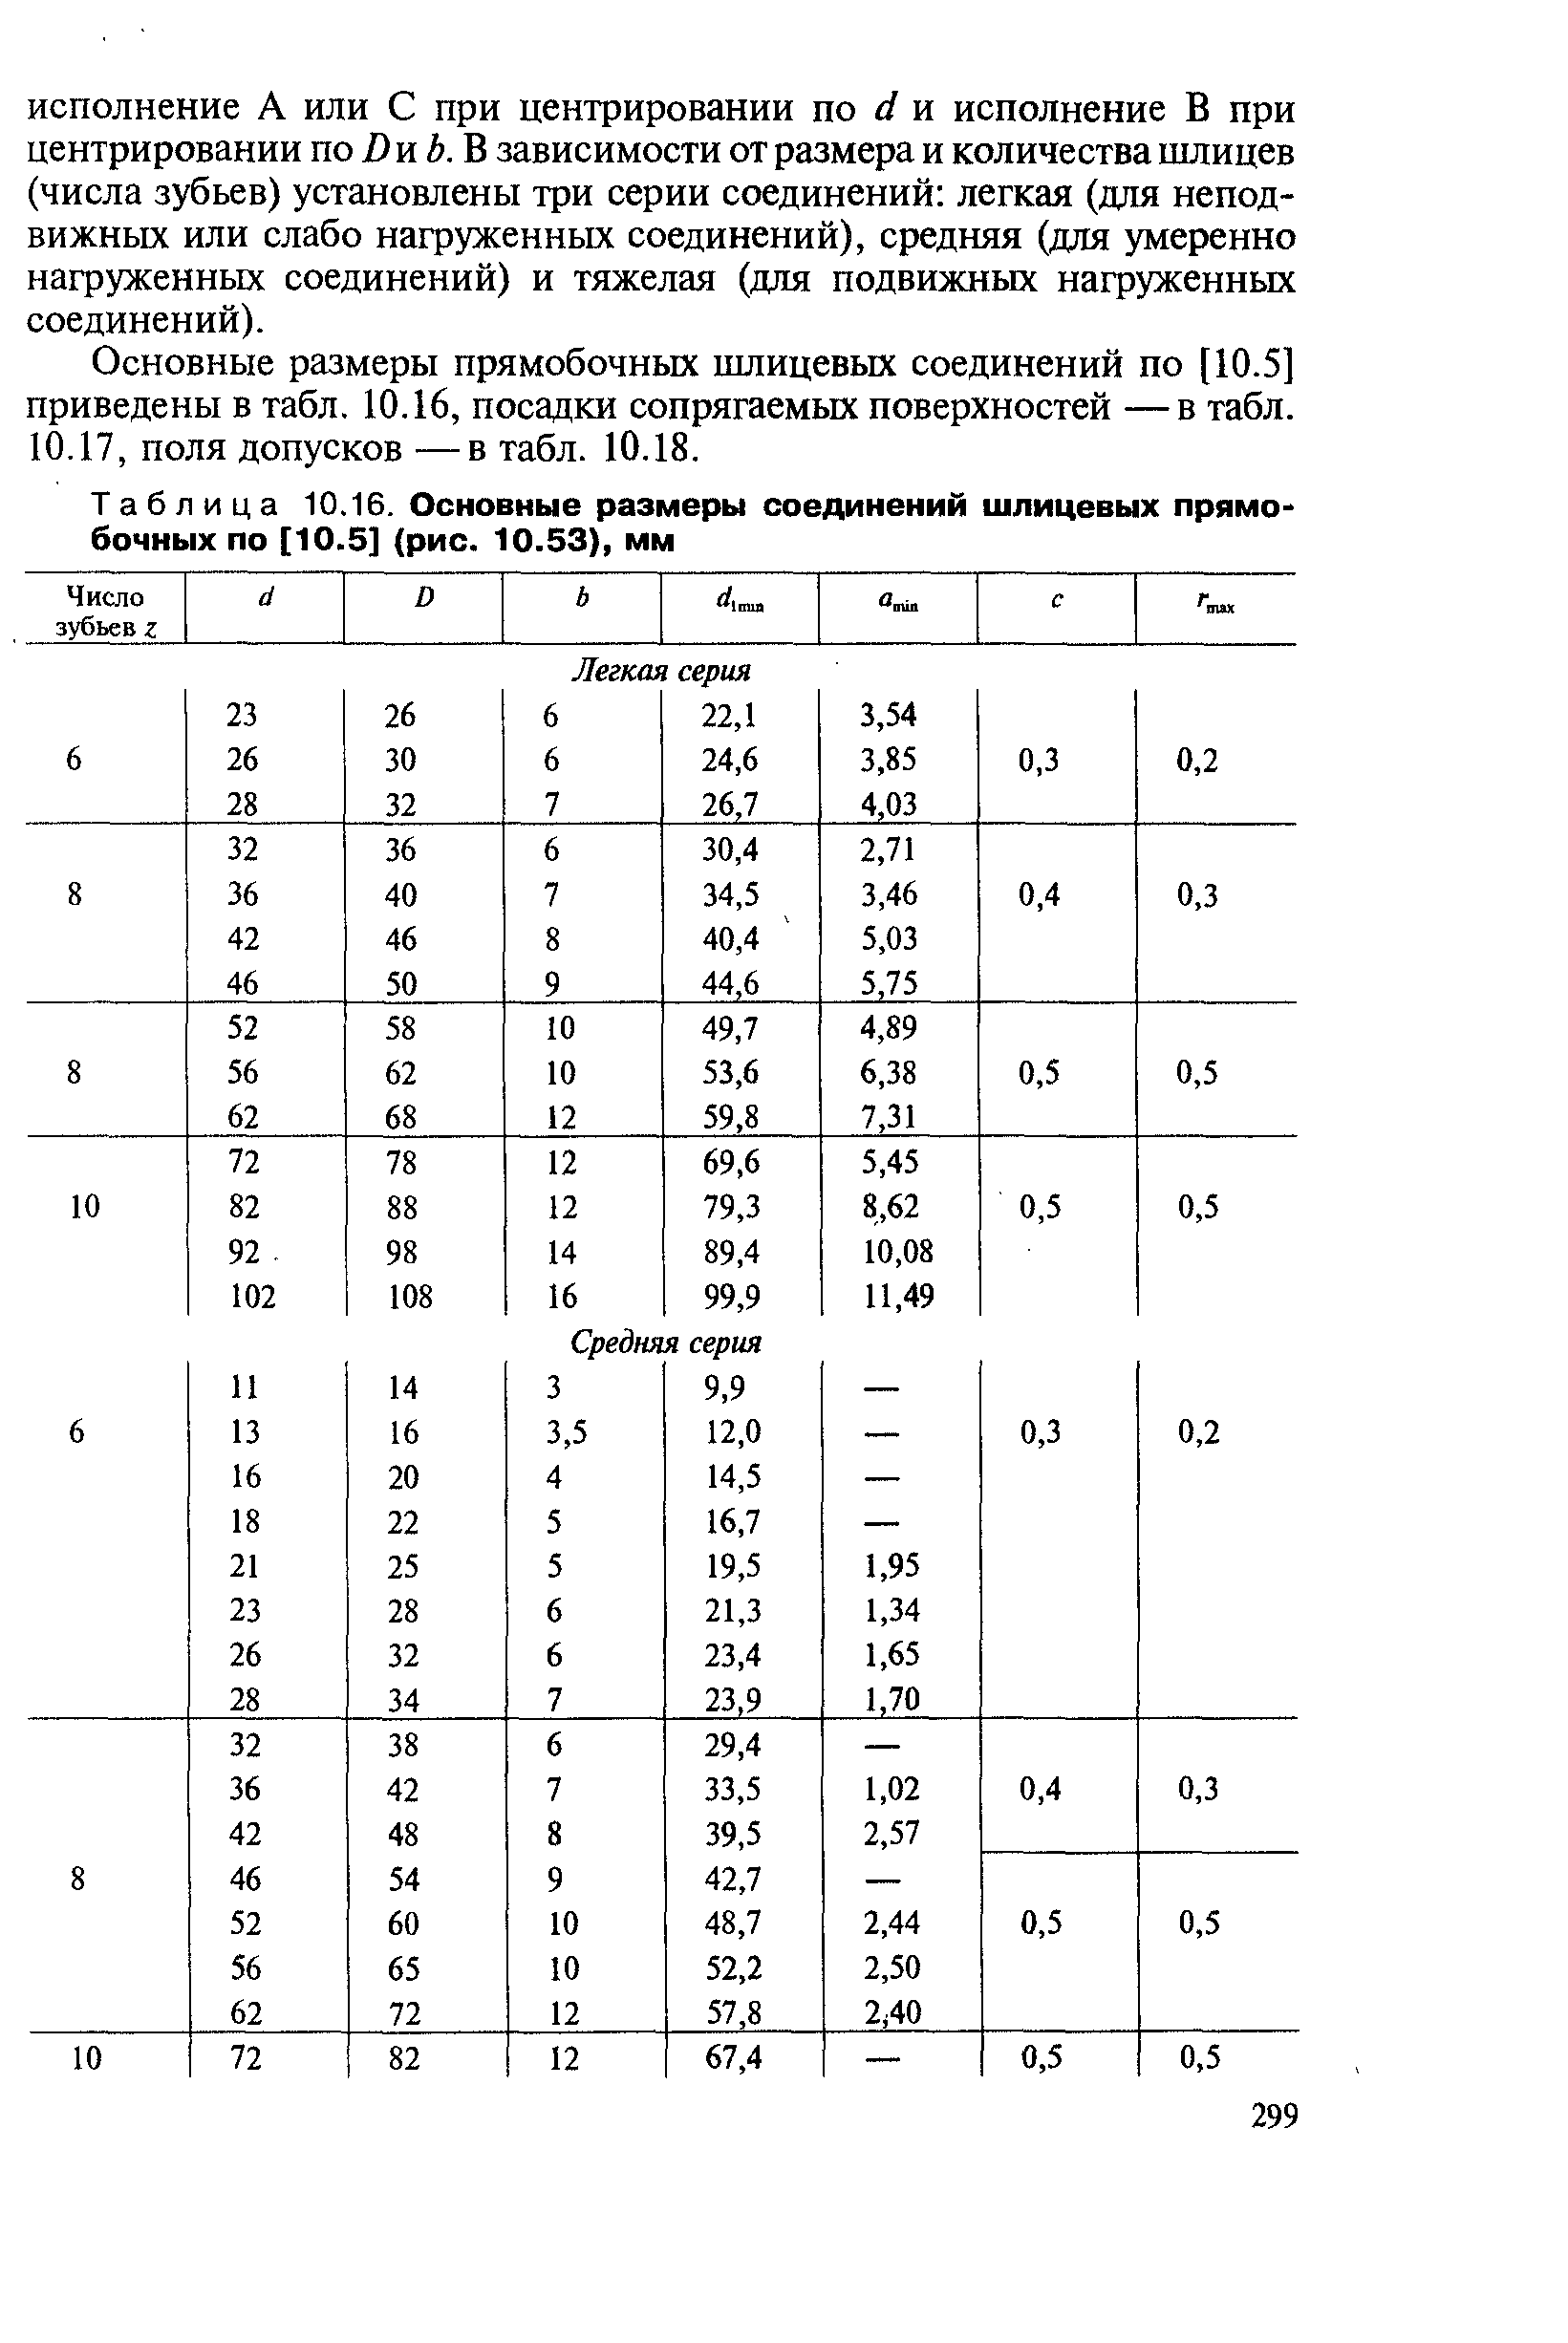 Таблица 10.16. Основные <a href="/info/2168">размеры соединений шлицевых</a> прямобочных по [10.5] (рис. 10.53), мм
